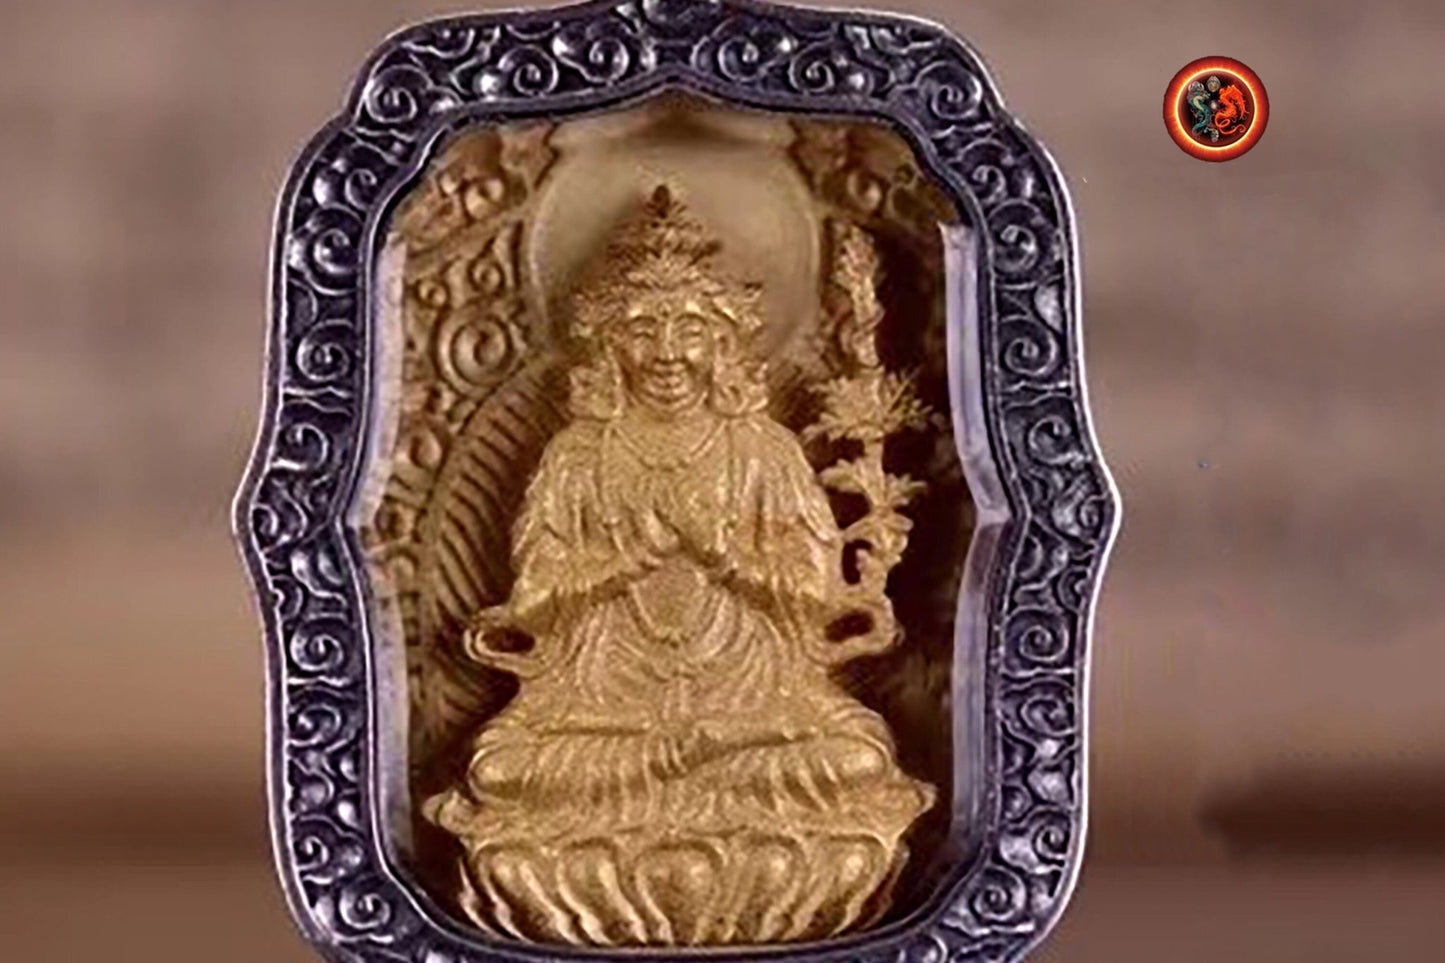 pendentif amulette de protection bouddhiste Mahasthamaprapta mala de prière et méditation 108 perles, argent 925 or 18K bélière Garuda - obsidian dragon